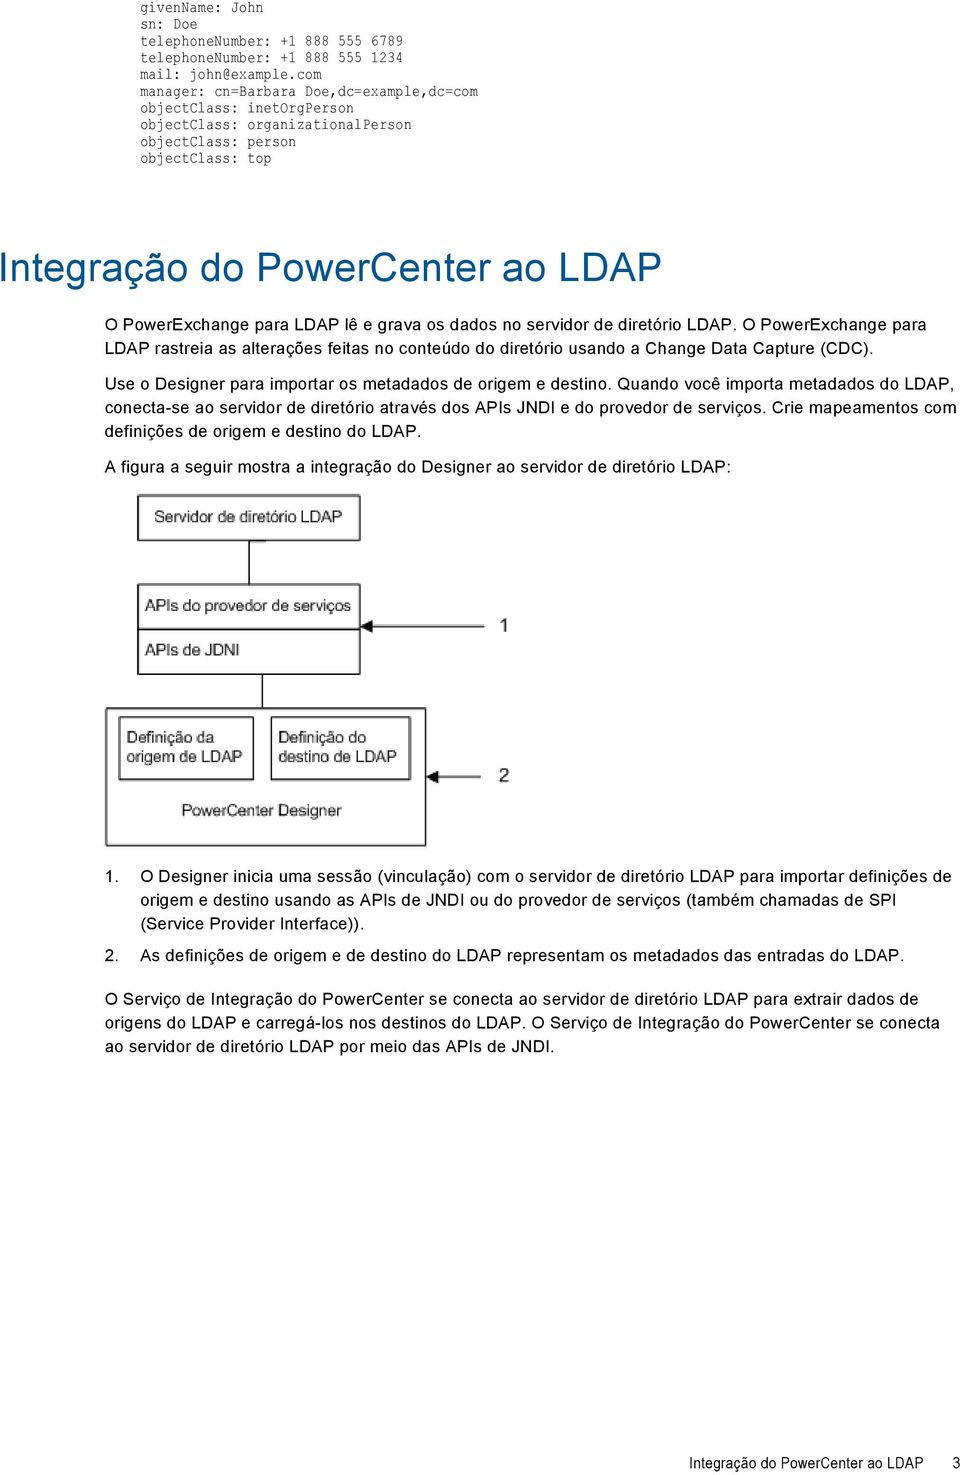 LDAP lê e grava os dados no servidor de diretório LDAP. O PowerExchange para LDAP rastreia as alterações feitas no conteúdo do diretório usando a Change Data Capture (CDC).